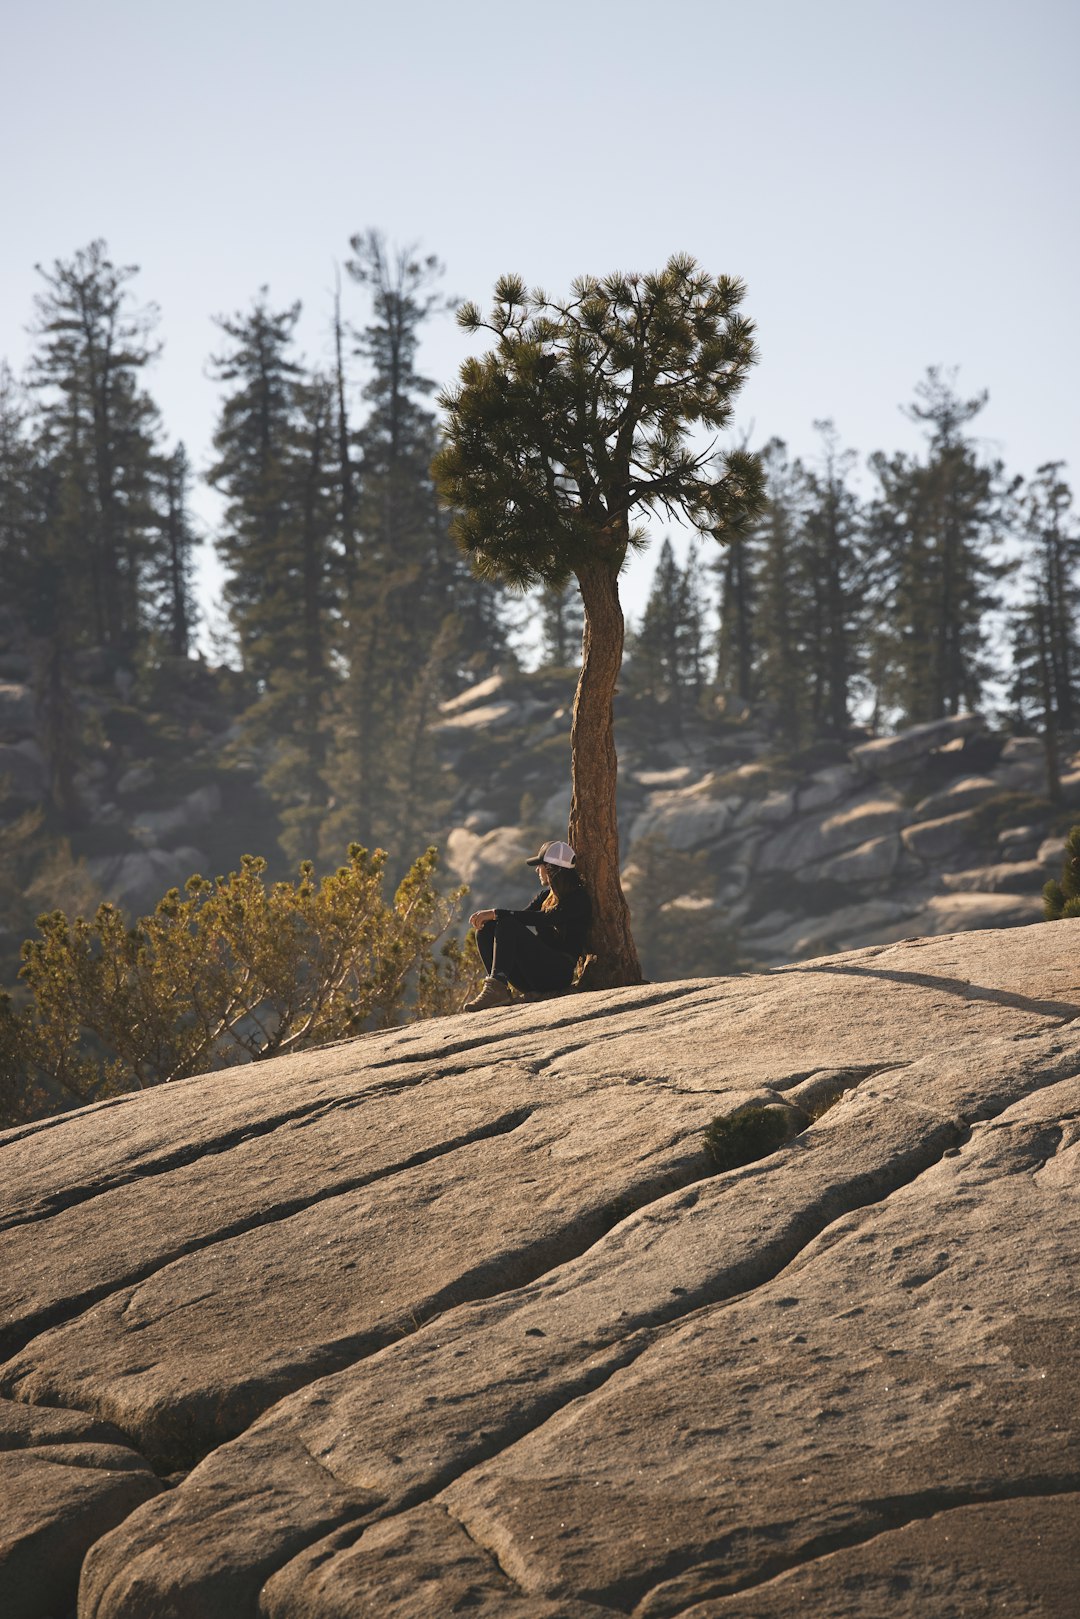 man in black jacket sitting on brown rock during daytime